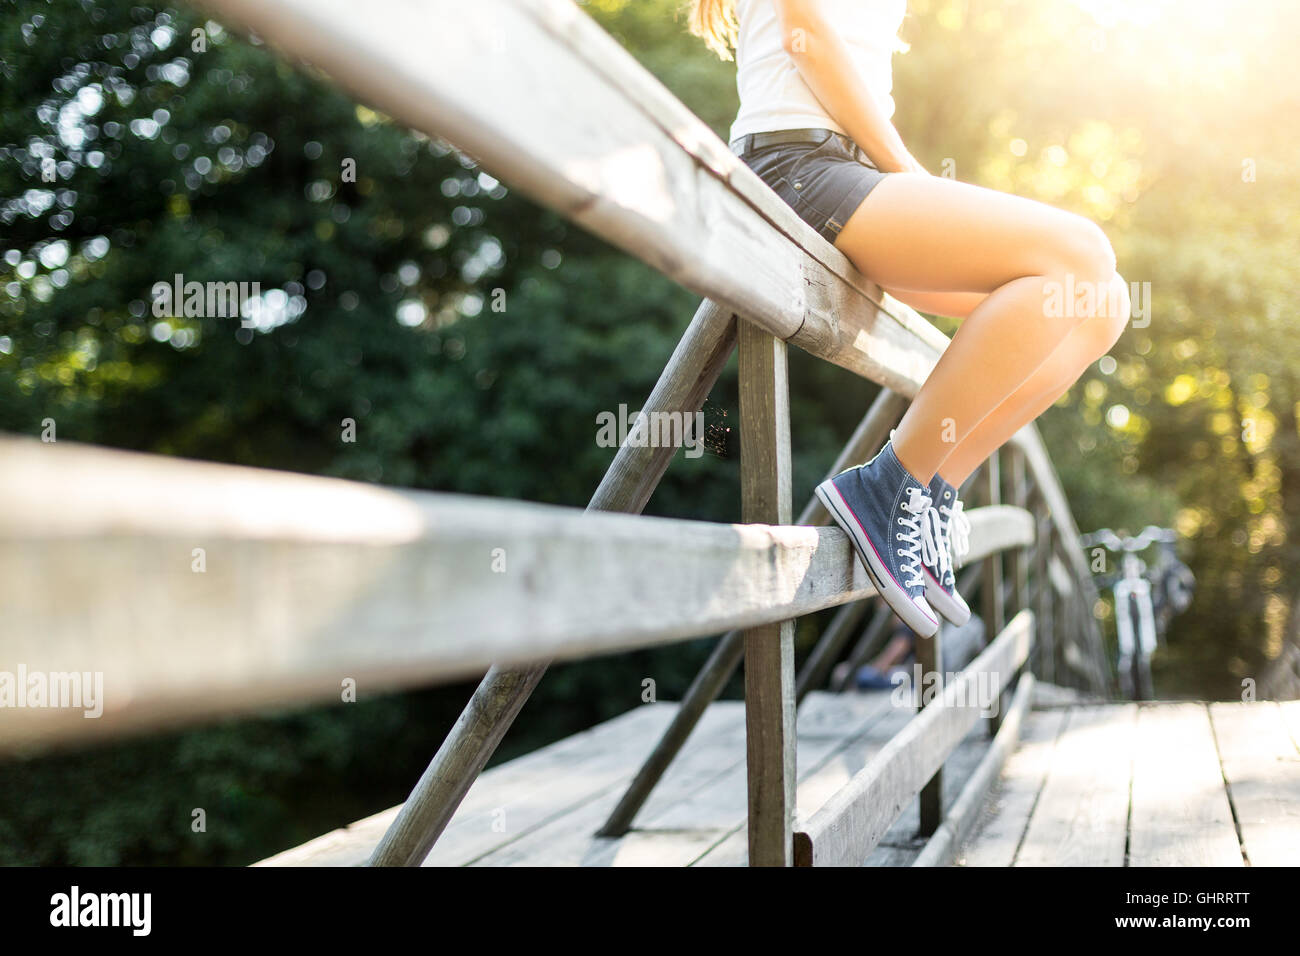 Junge Frau mit schönen sportlichen Beinen sitzen auf einer Holzbrücke Geländer in Jeans Turnschuhen Stockfoto